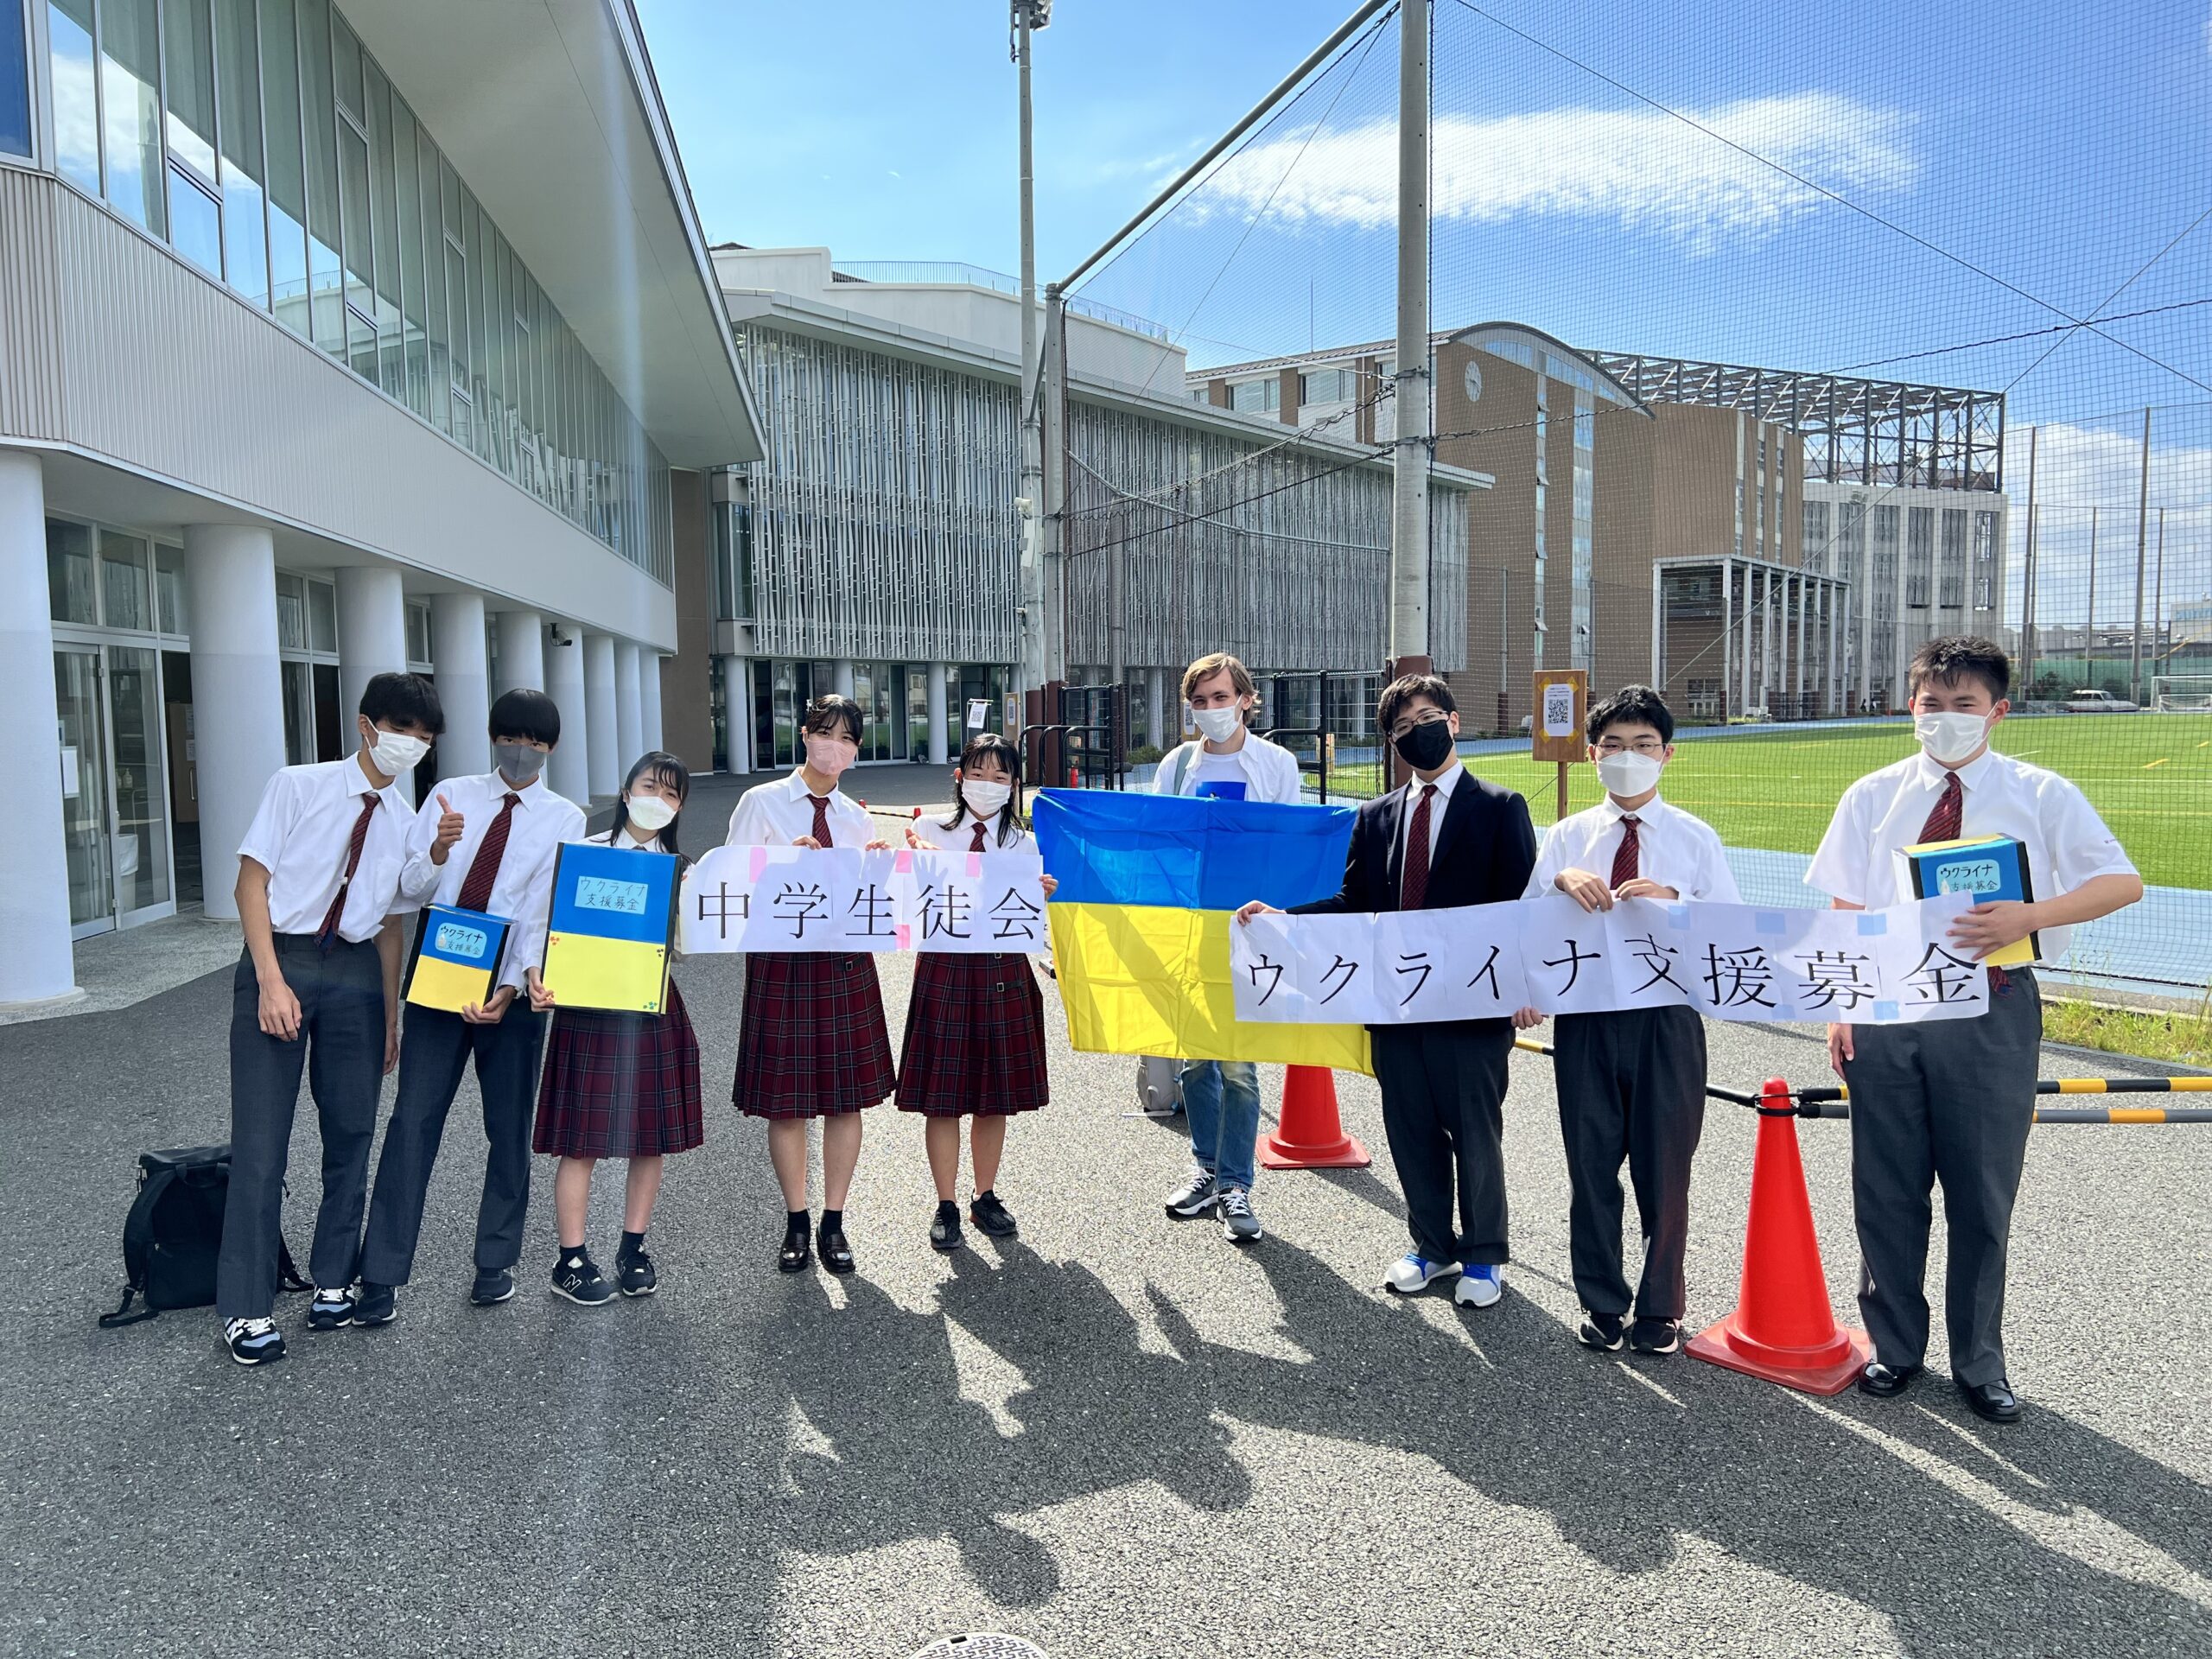 Junior High School Students collecting money to help Ukrainian people